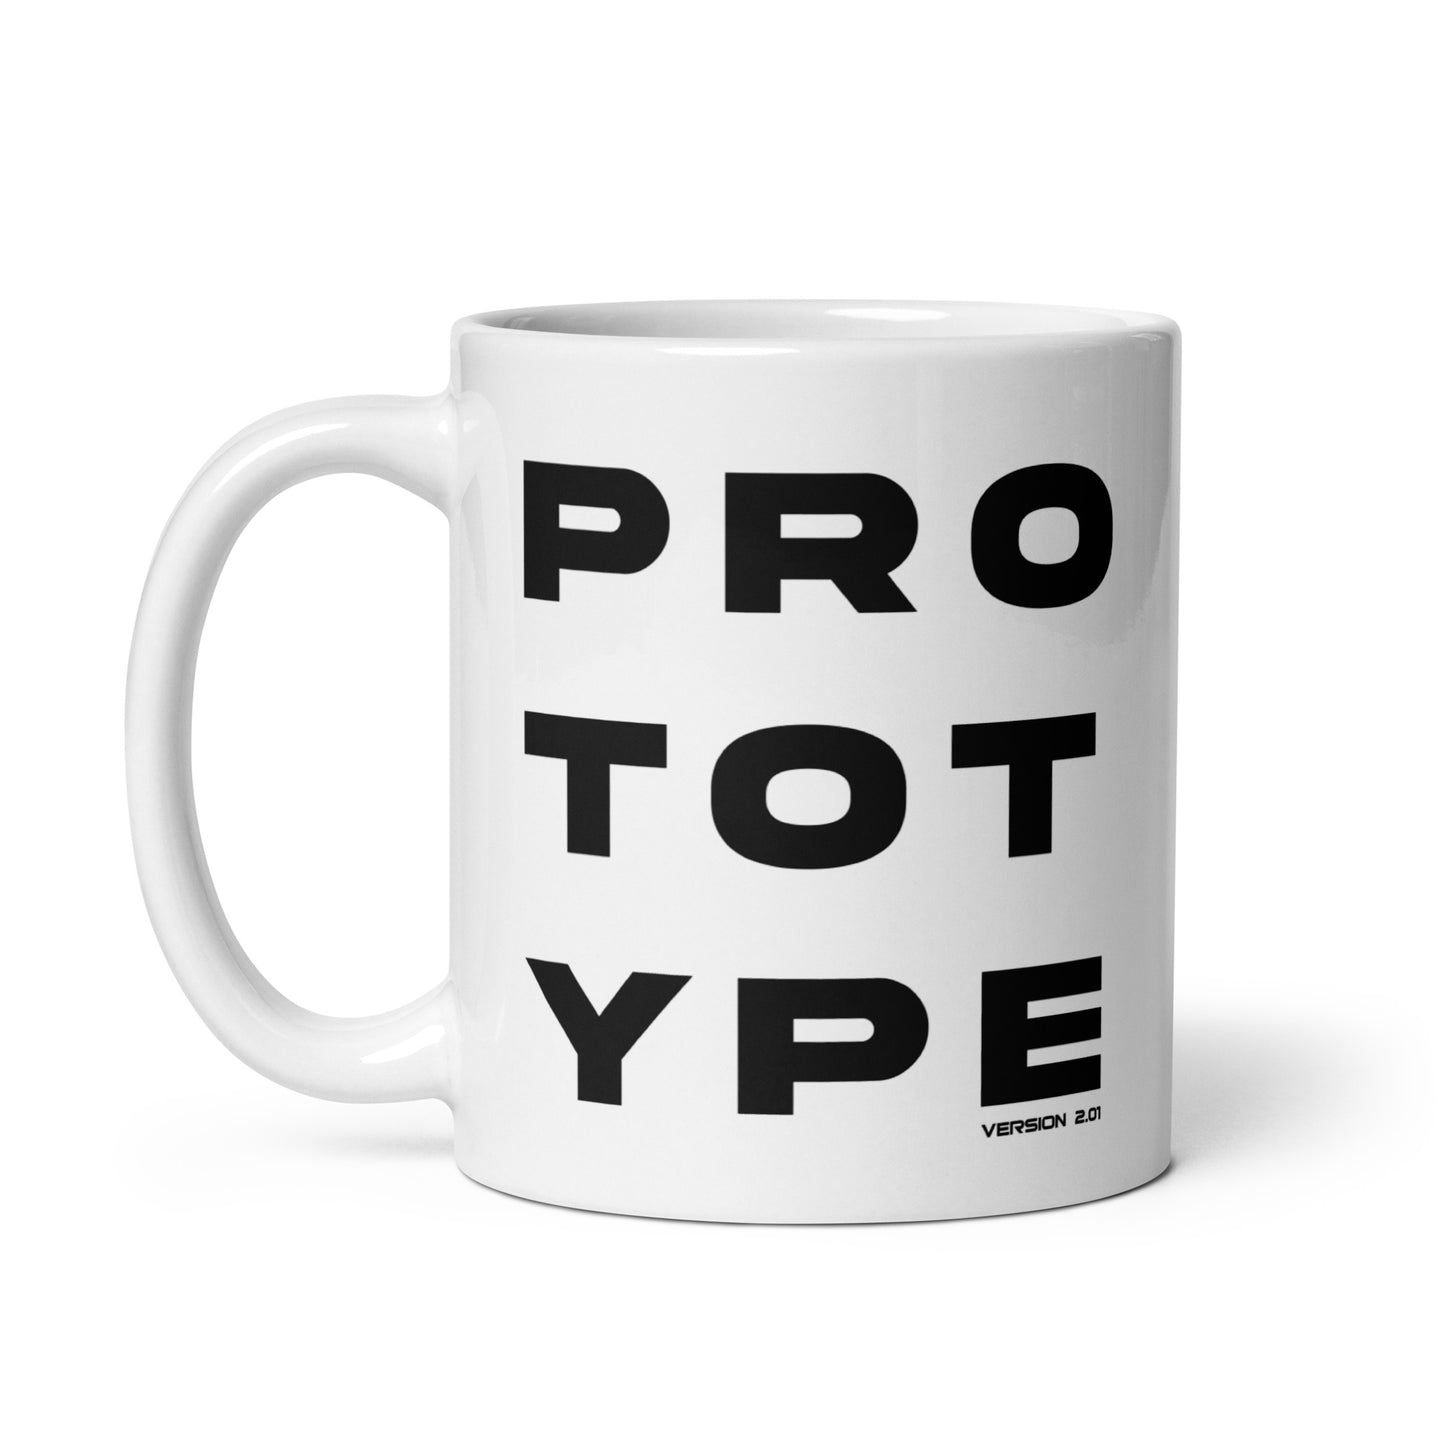 Prototype (v3) White glossy mug